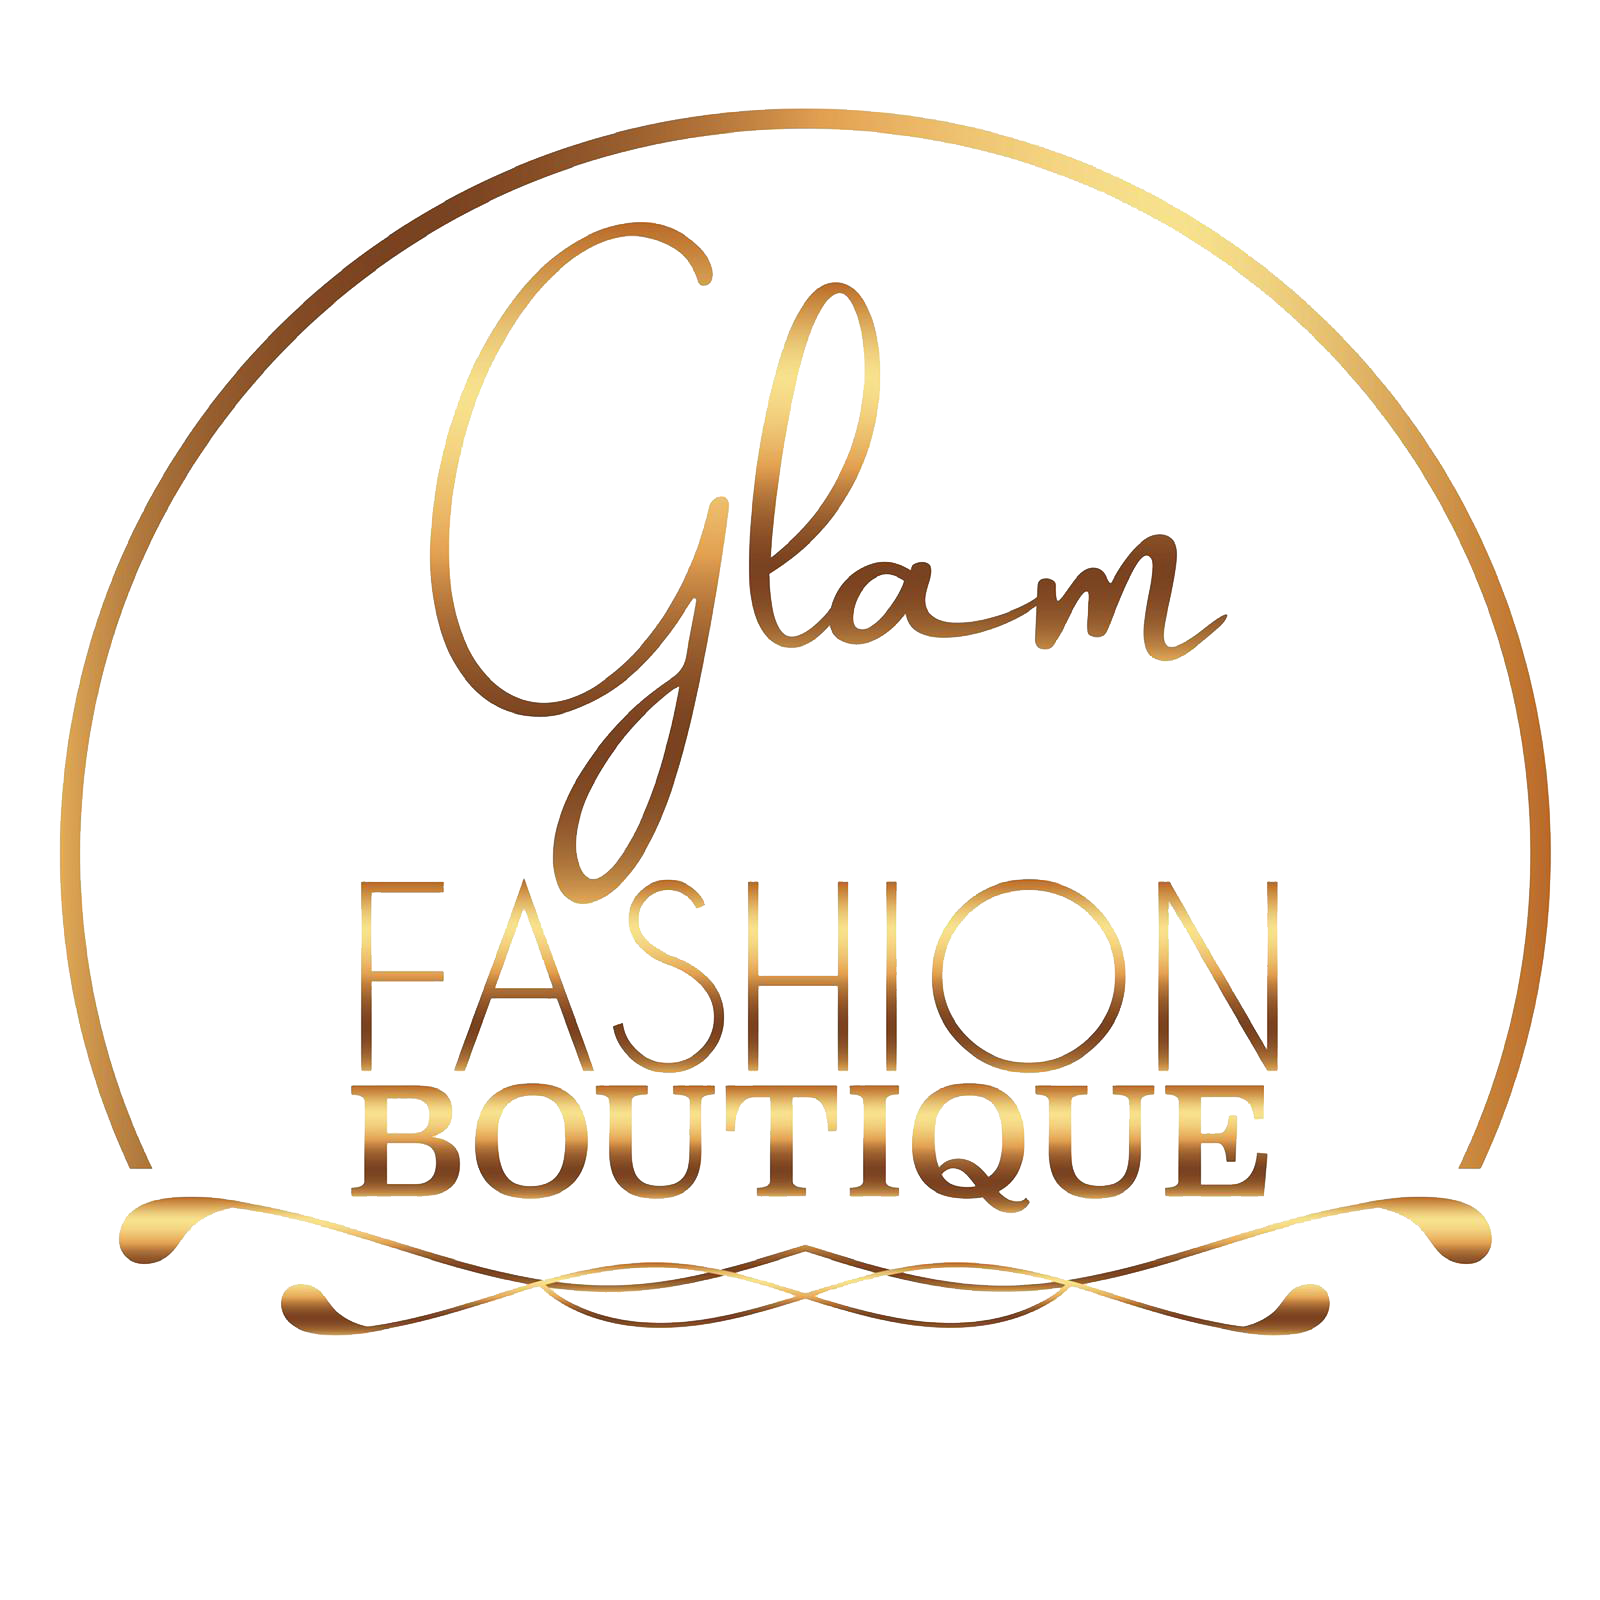 Premade Boutique Logo Design \u2013 Online Fashion Boutique Shoes Crown Apparel Accessories Closet Beauty Glam Elegant Luxe Bundles Glam Diamonds